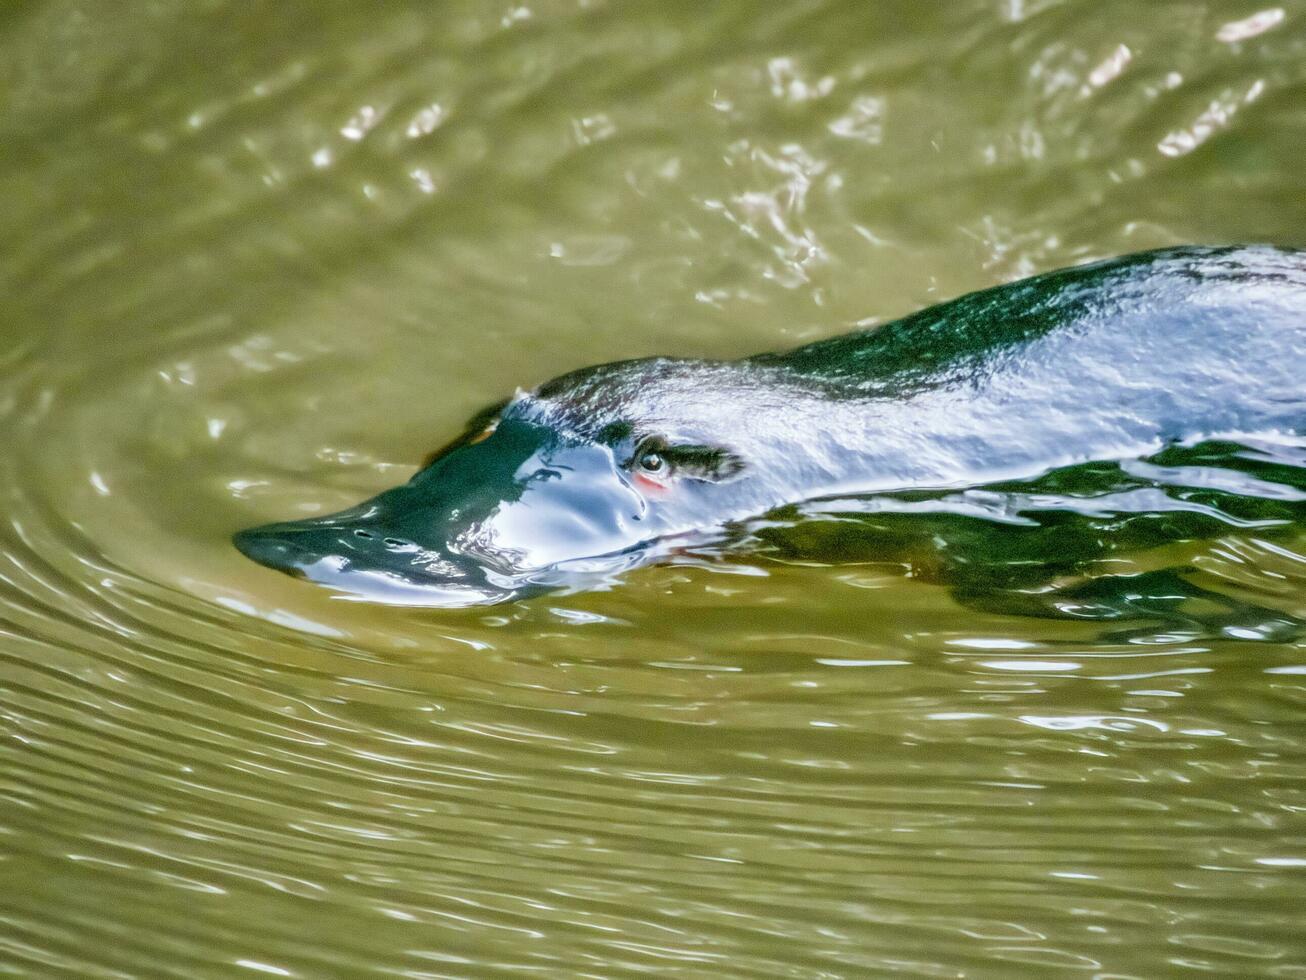 Duck-billed Platypus in Australia photo